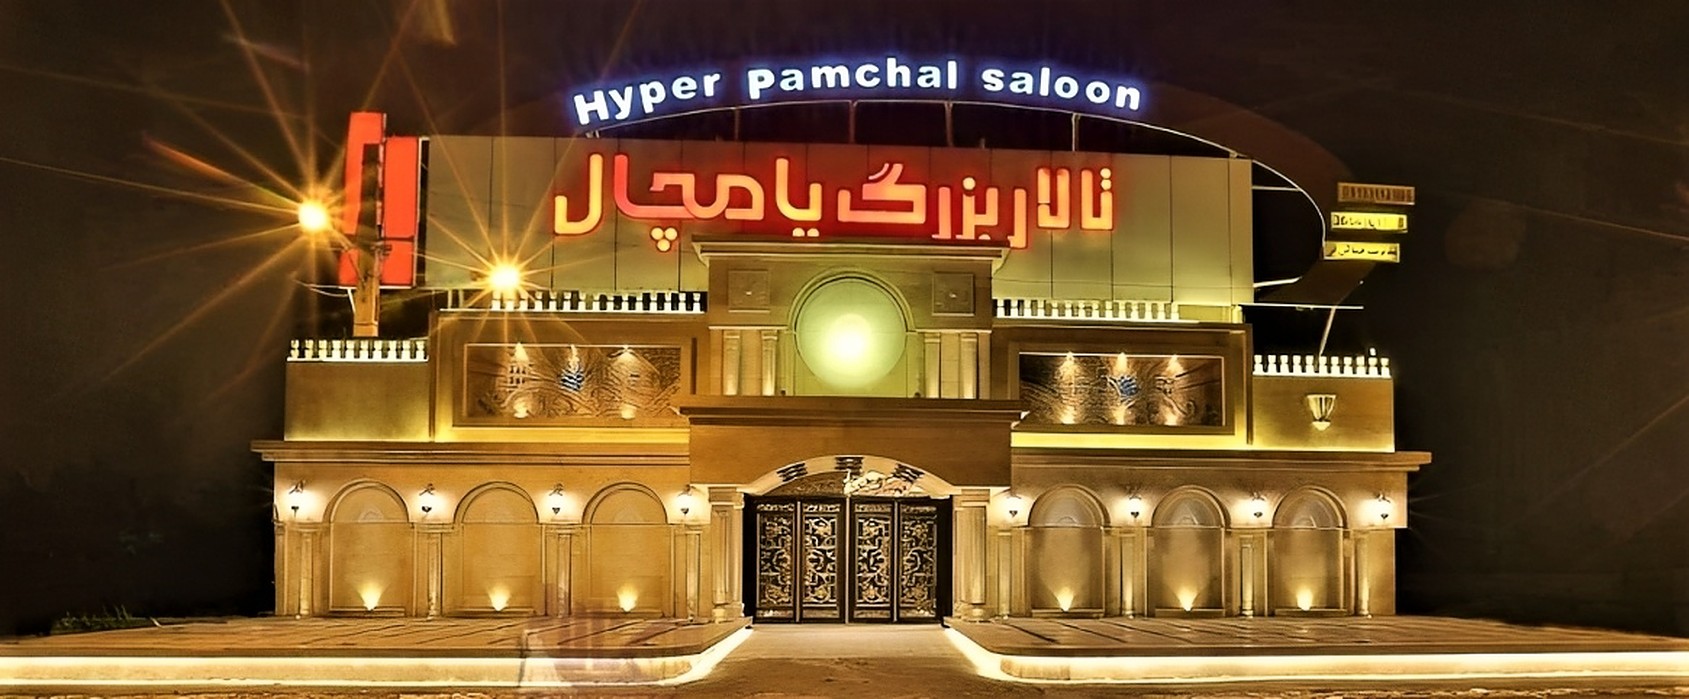 تالار پامچال اصفهان